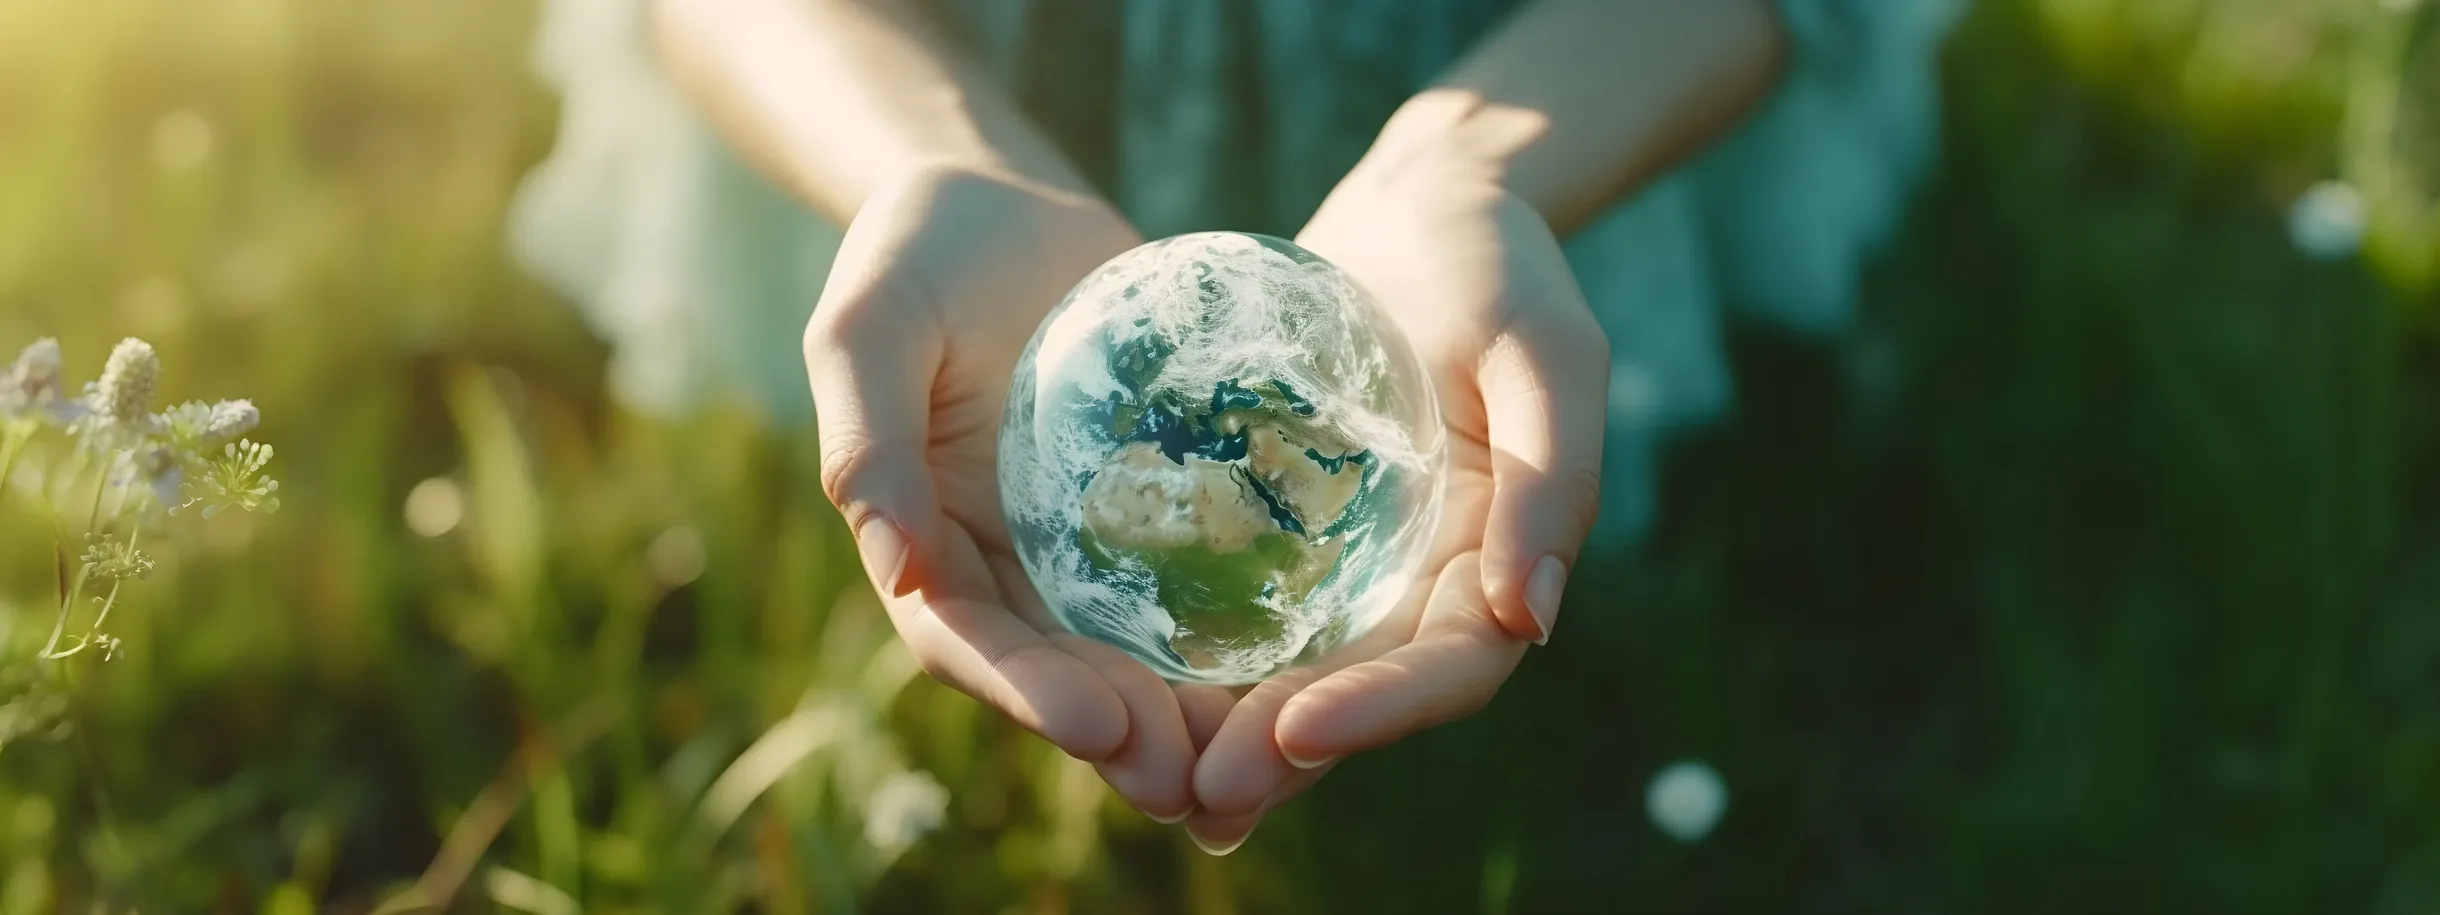 Frau hält die Erde in der Hand, rettet den Planeten, Tag der Erde, nachhaltiges Leben, ökologische Umwelt